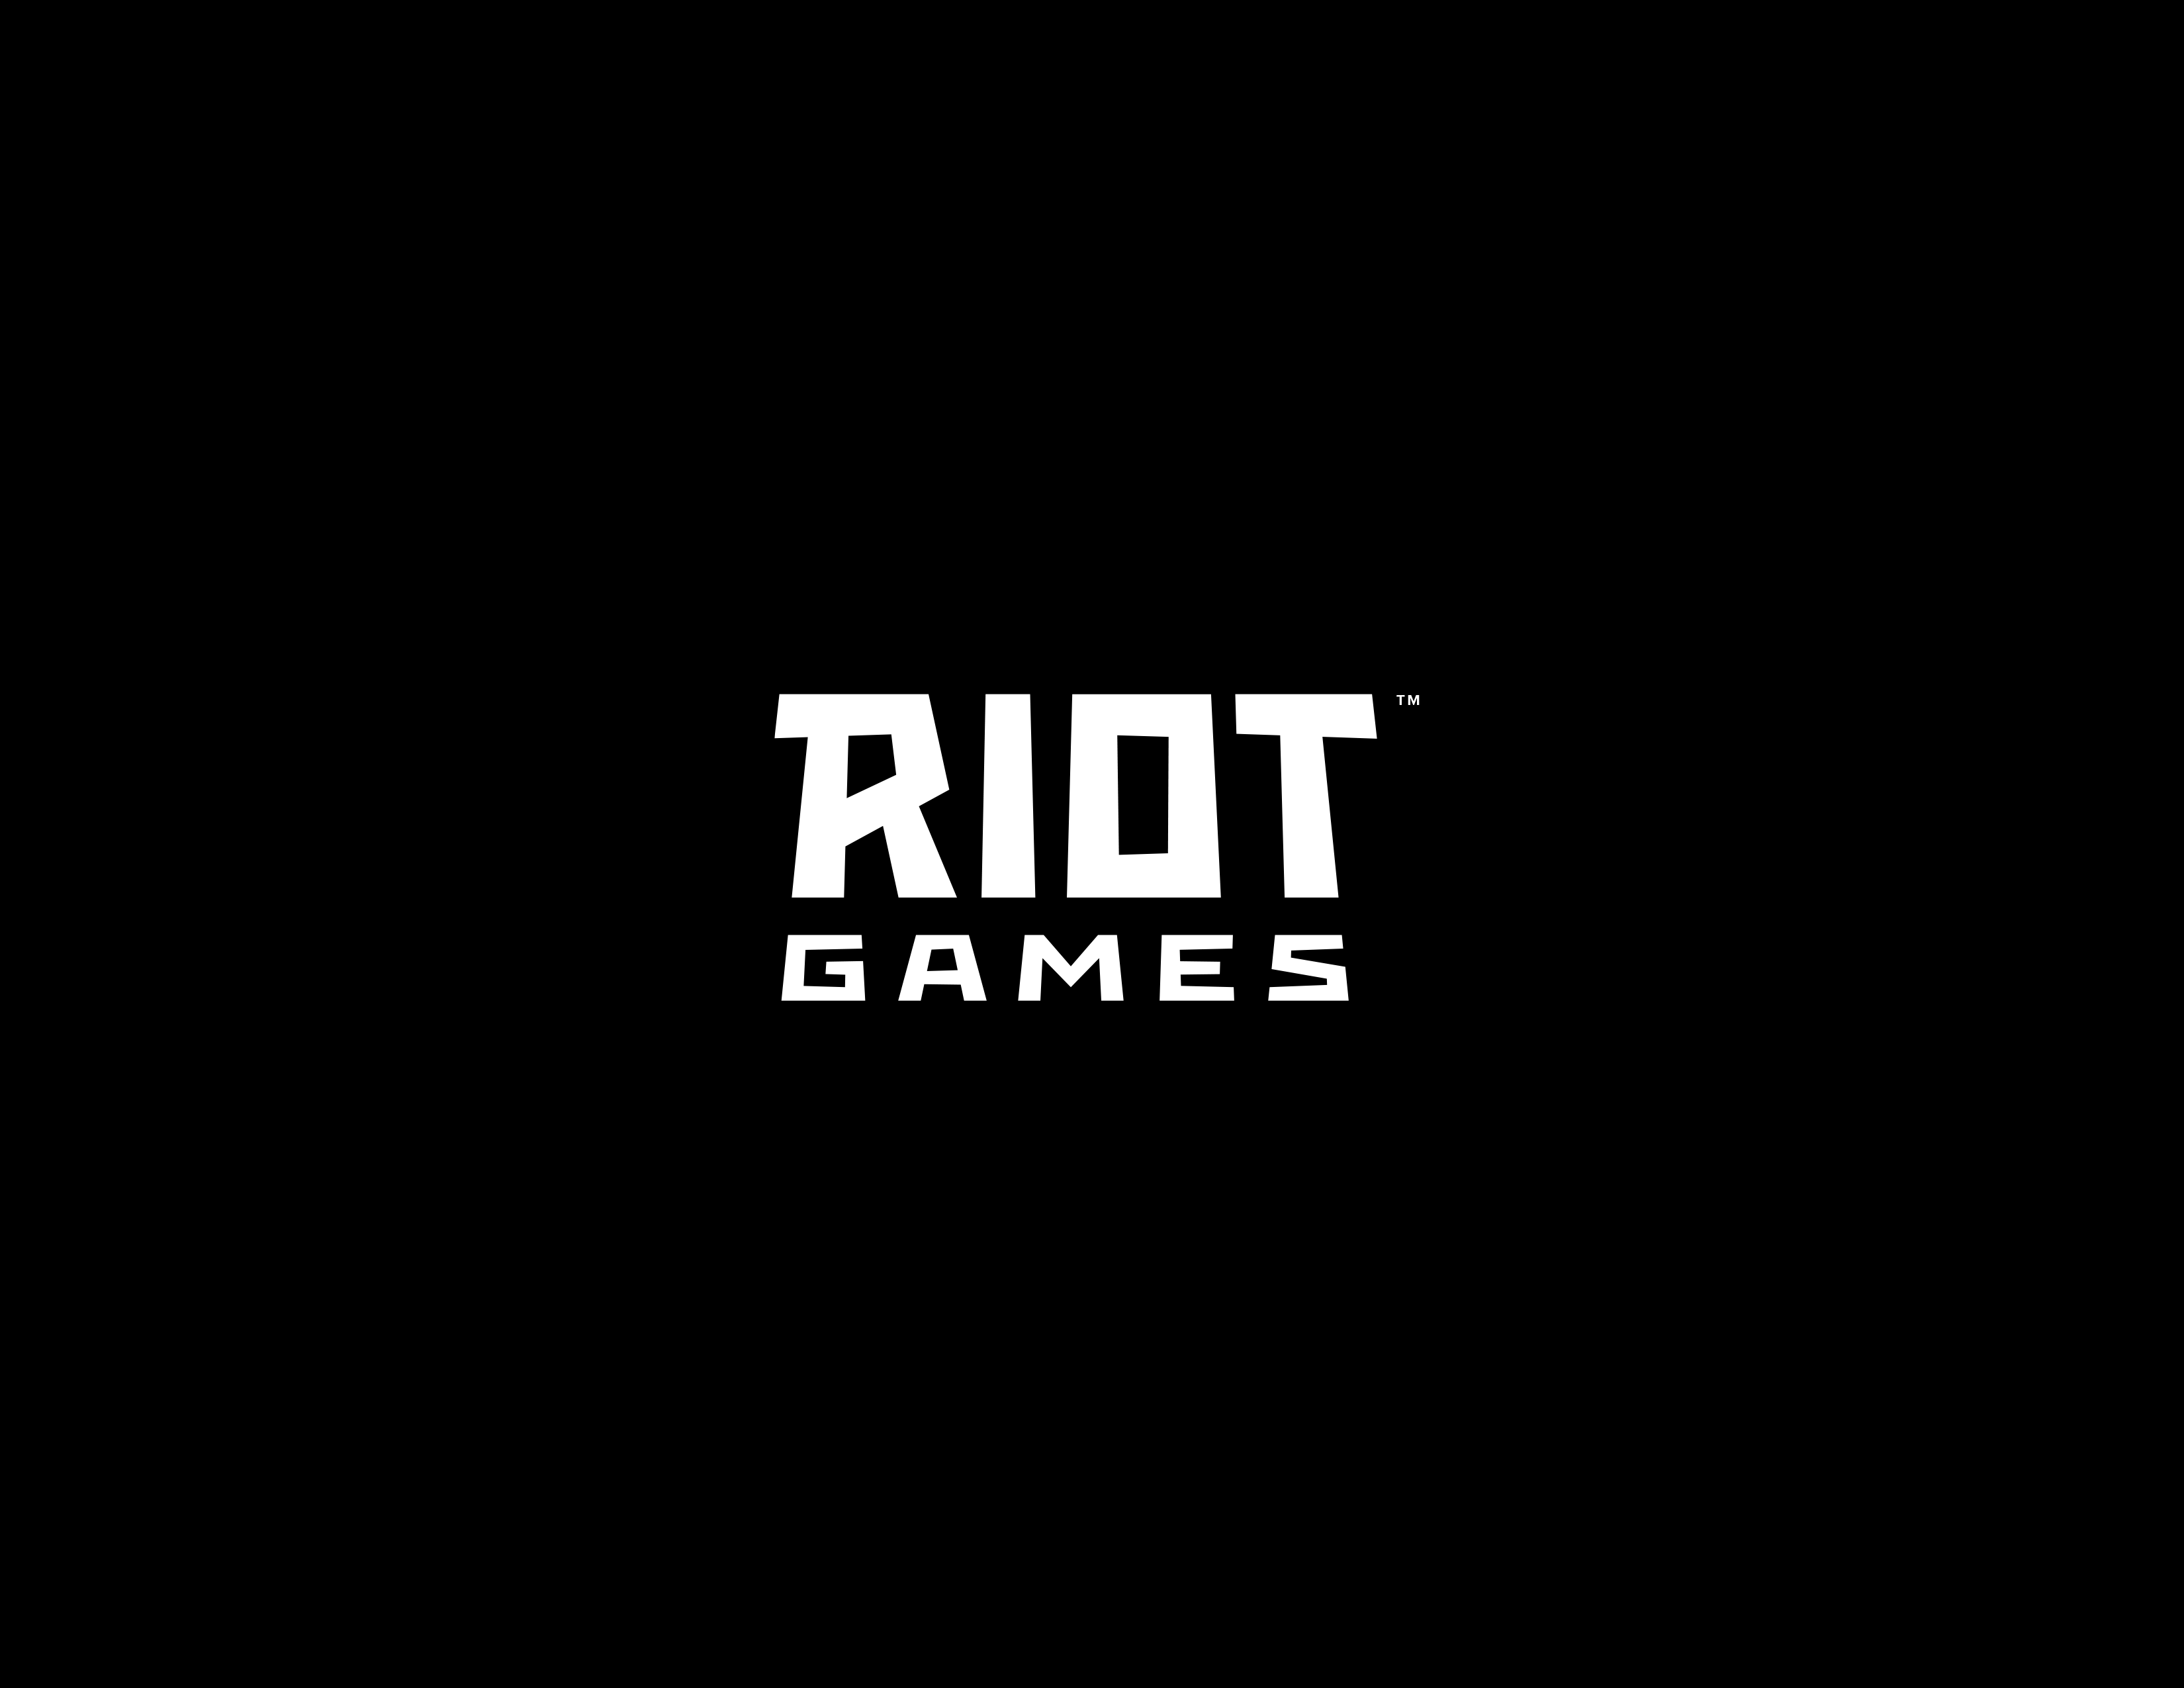 riot games wallpaper